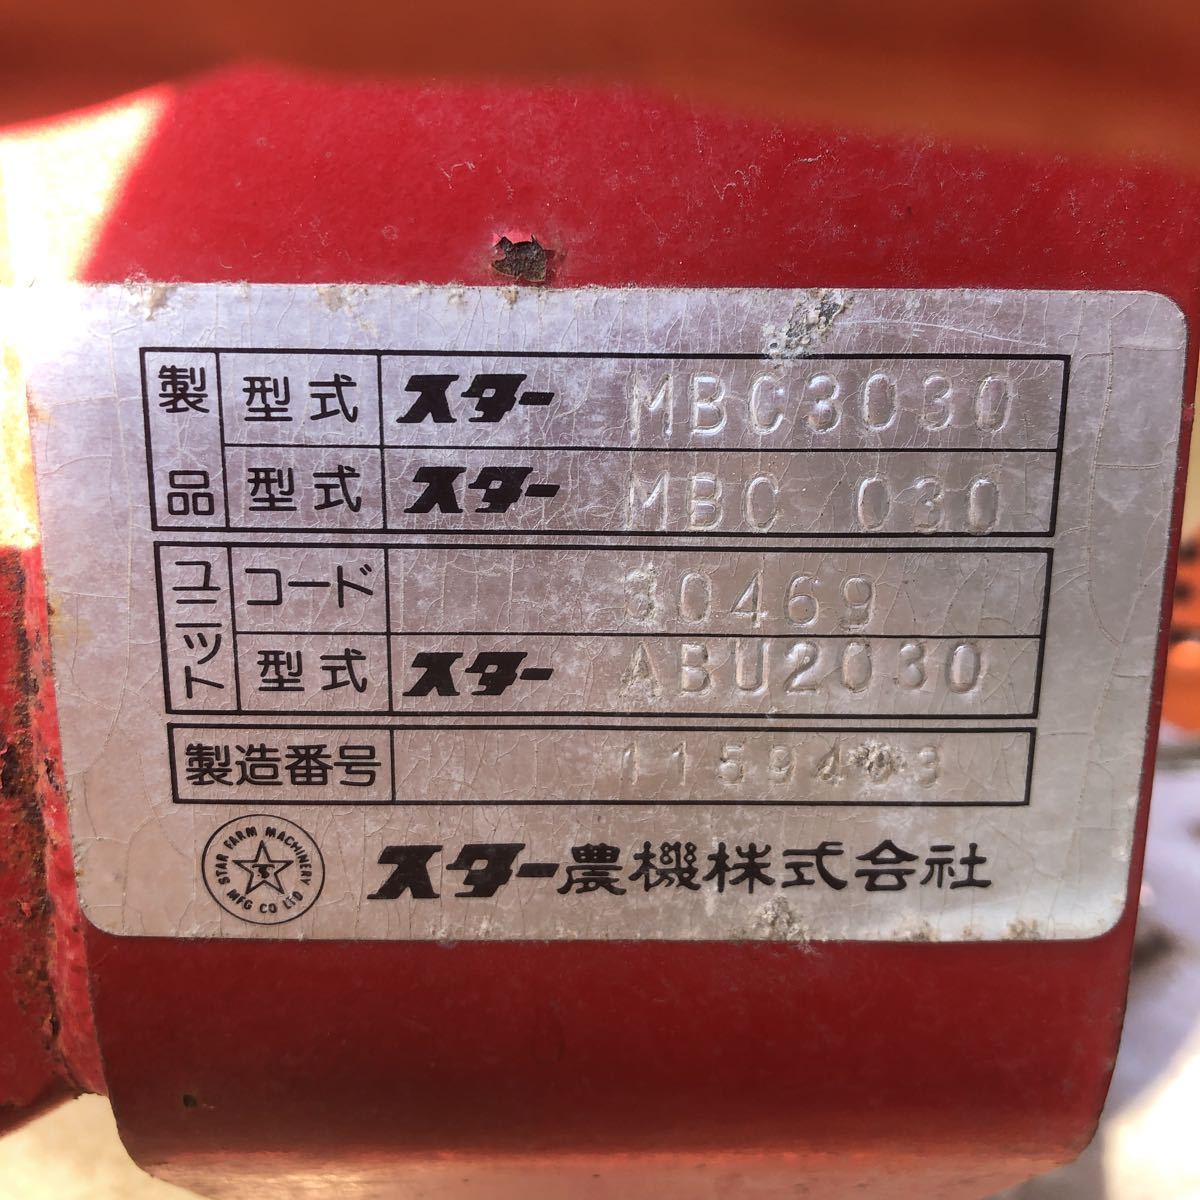 スター農機 ブロードキャスター 肥料散布機 MBC3030(パーツ)｜売買されたオークション情報、yahooの商品情報をアーカイブ公開